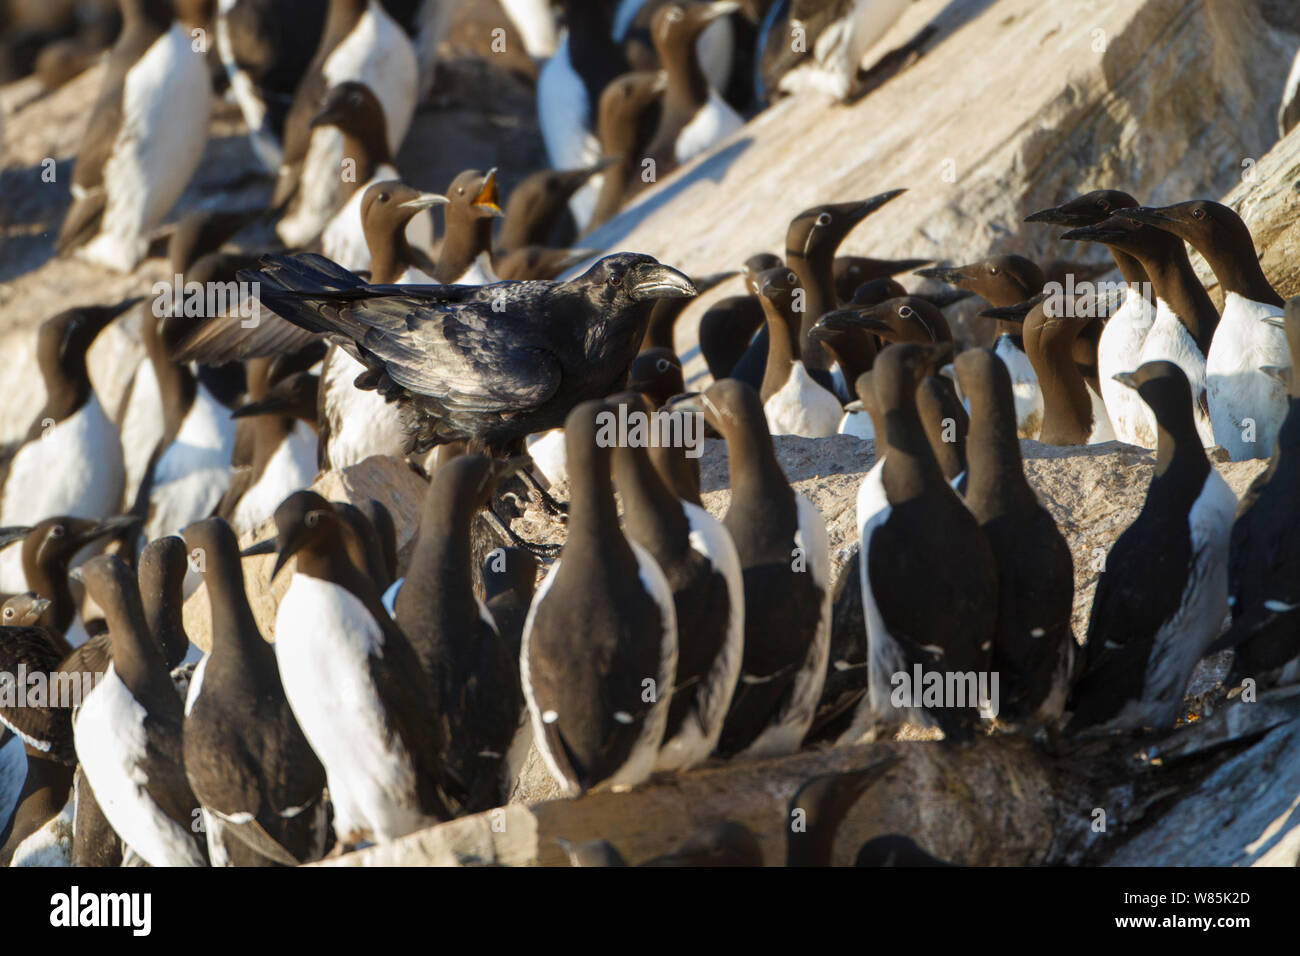 Kolkrabe (Corvus Corax) in einer Kolonie von Gemeinsamen trottellummen (Uria aalge) Hornoya vogel Cliff, Norwegen. Stockfoto